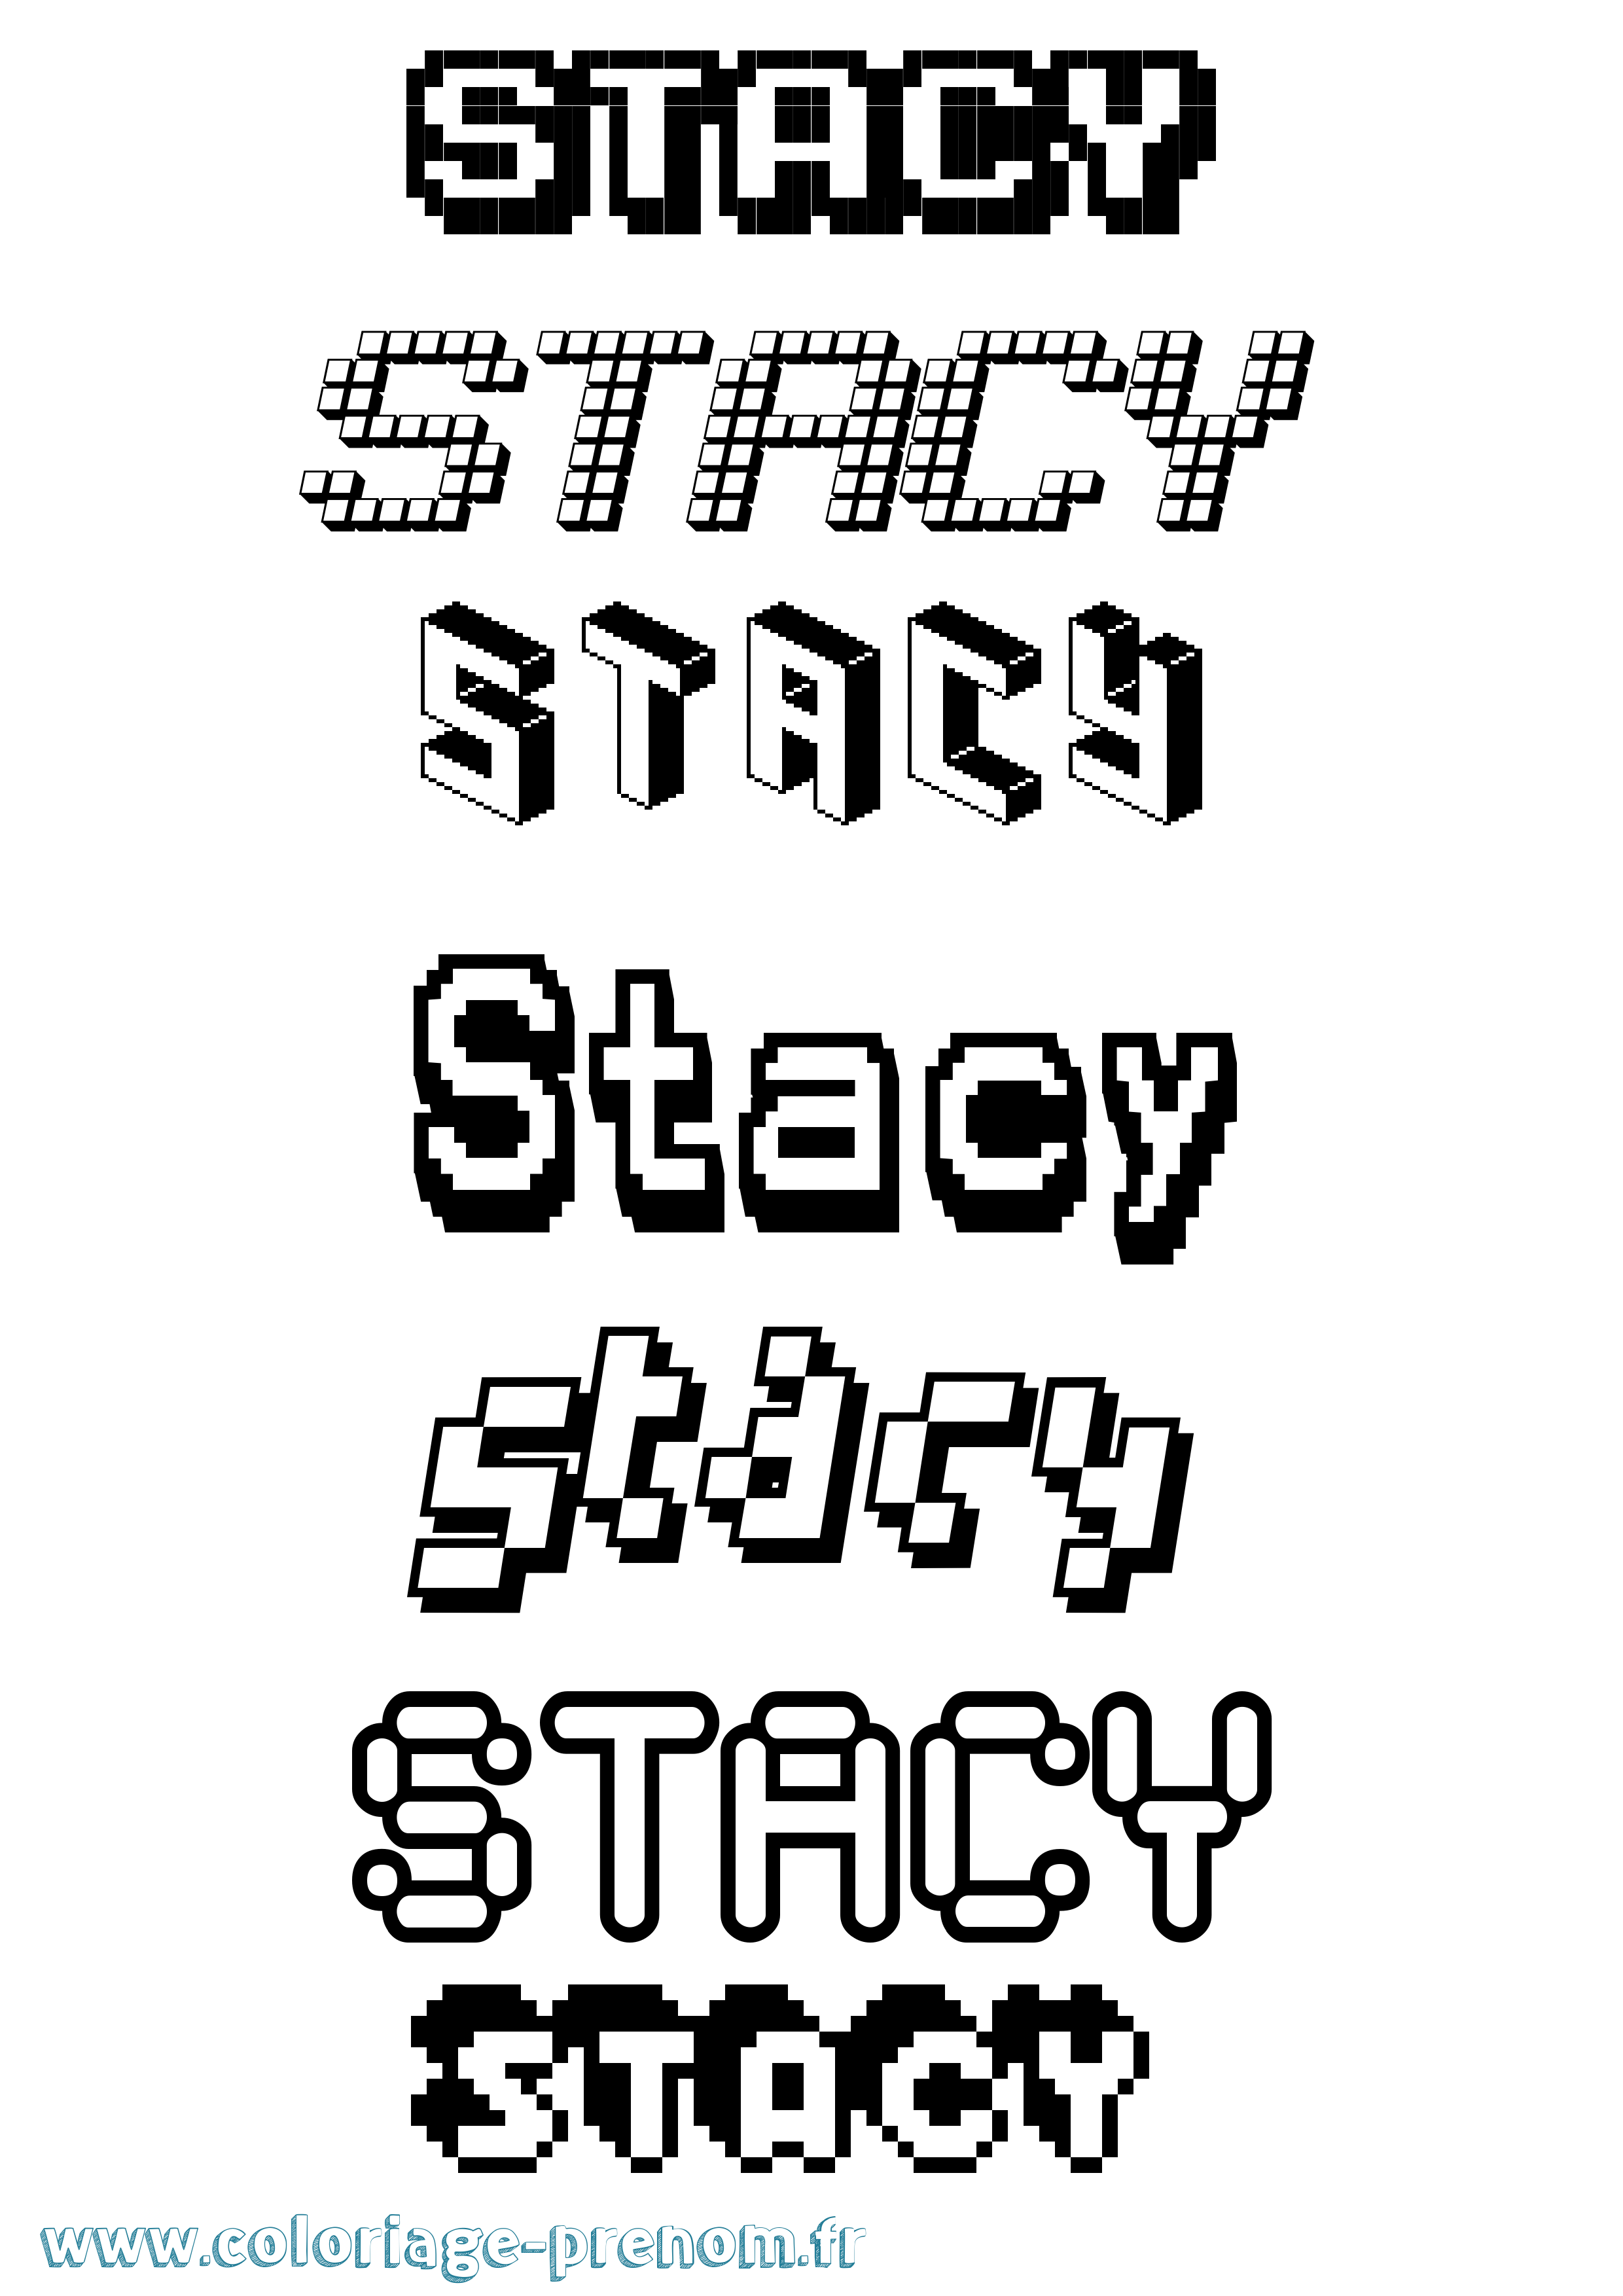 Coloriage prénom Stacy Pixel